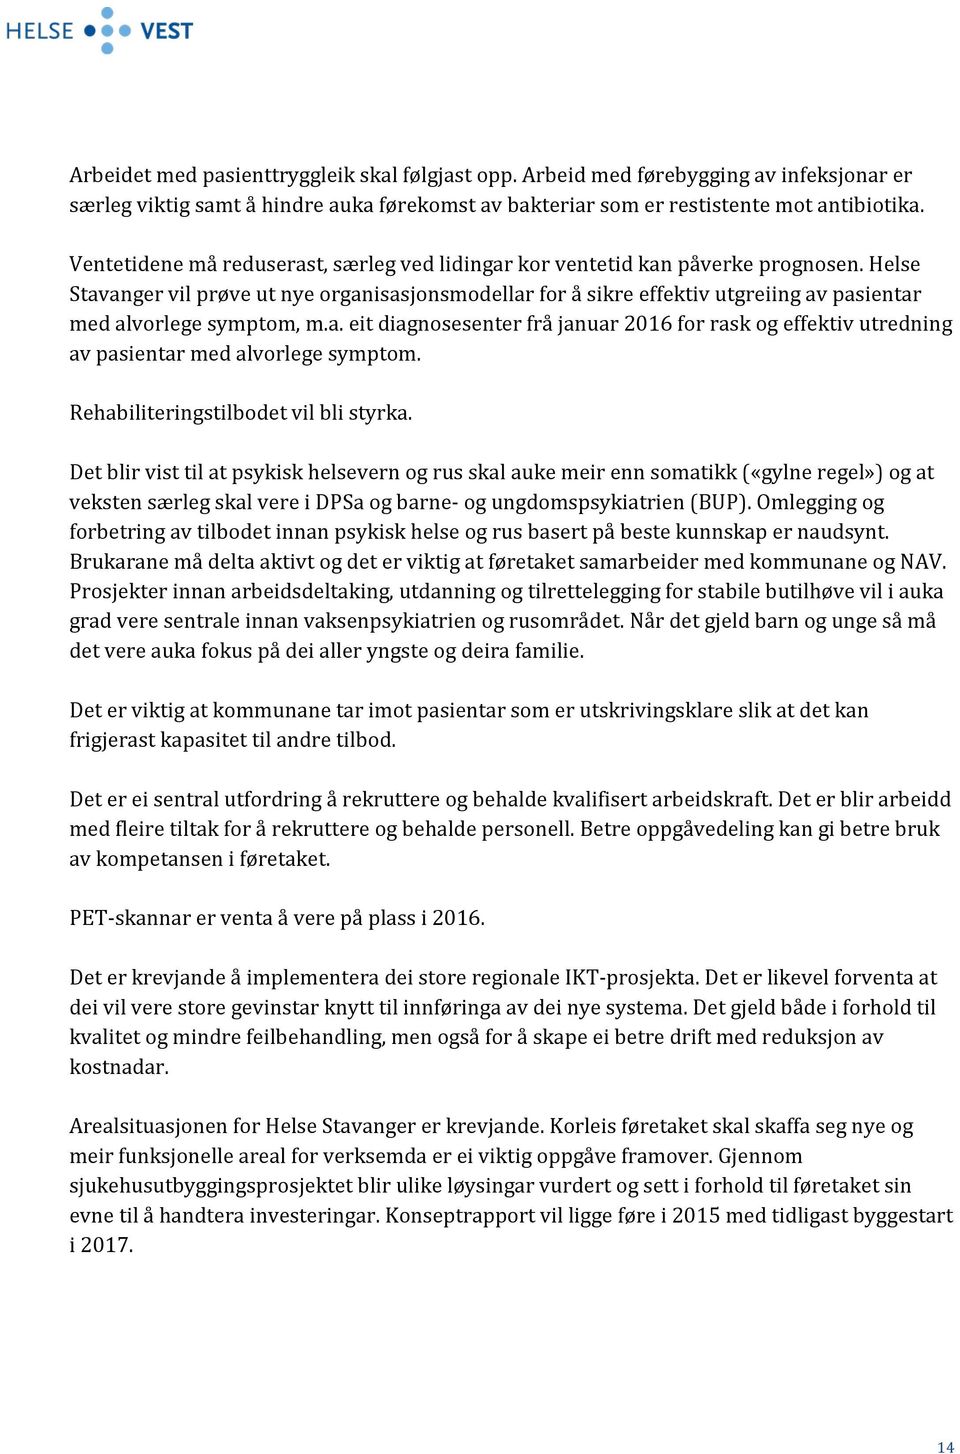 Helse Stavanger vil prøve ut nye organisasjonsmodellar for å sikre effektiv utgreiing av pasientar med alvorlege symptom, m.a. eit diagnosesenter frå januar 2016 for rask og effektiv utredning av pasientar med alvorlege symptom.